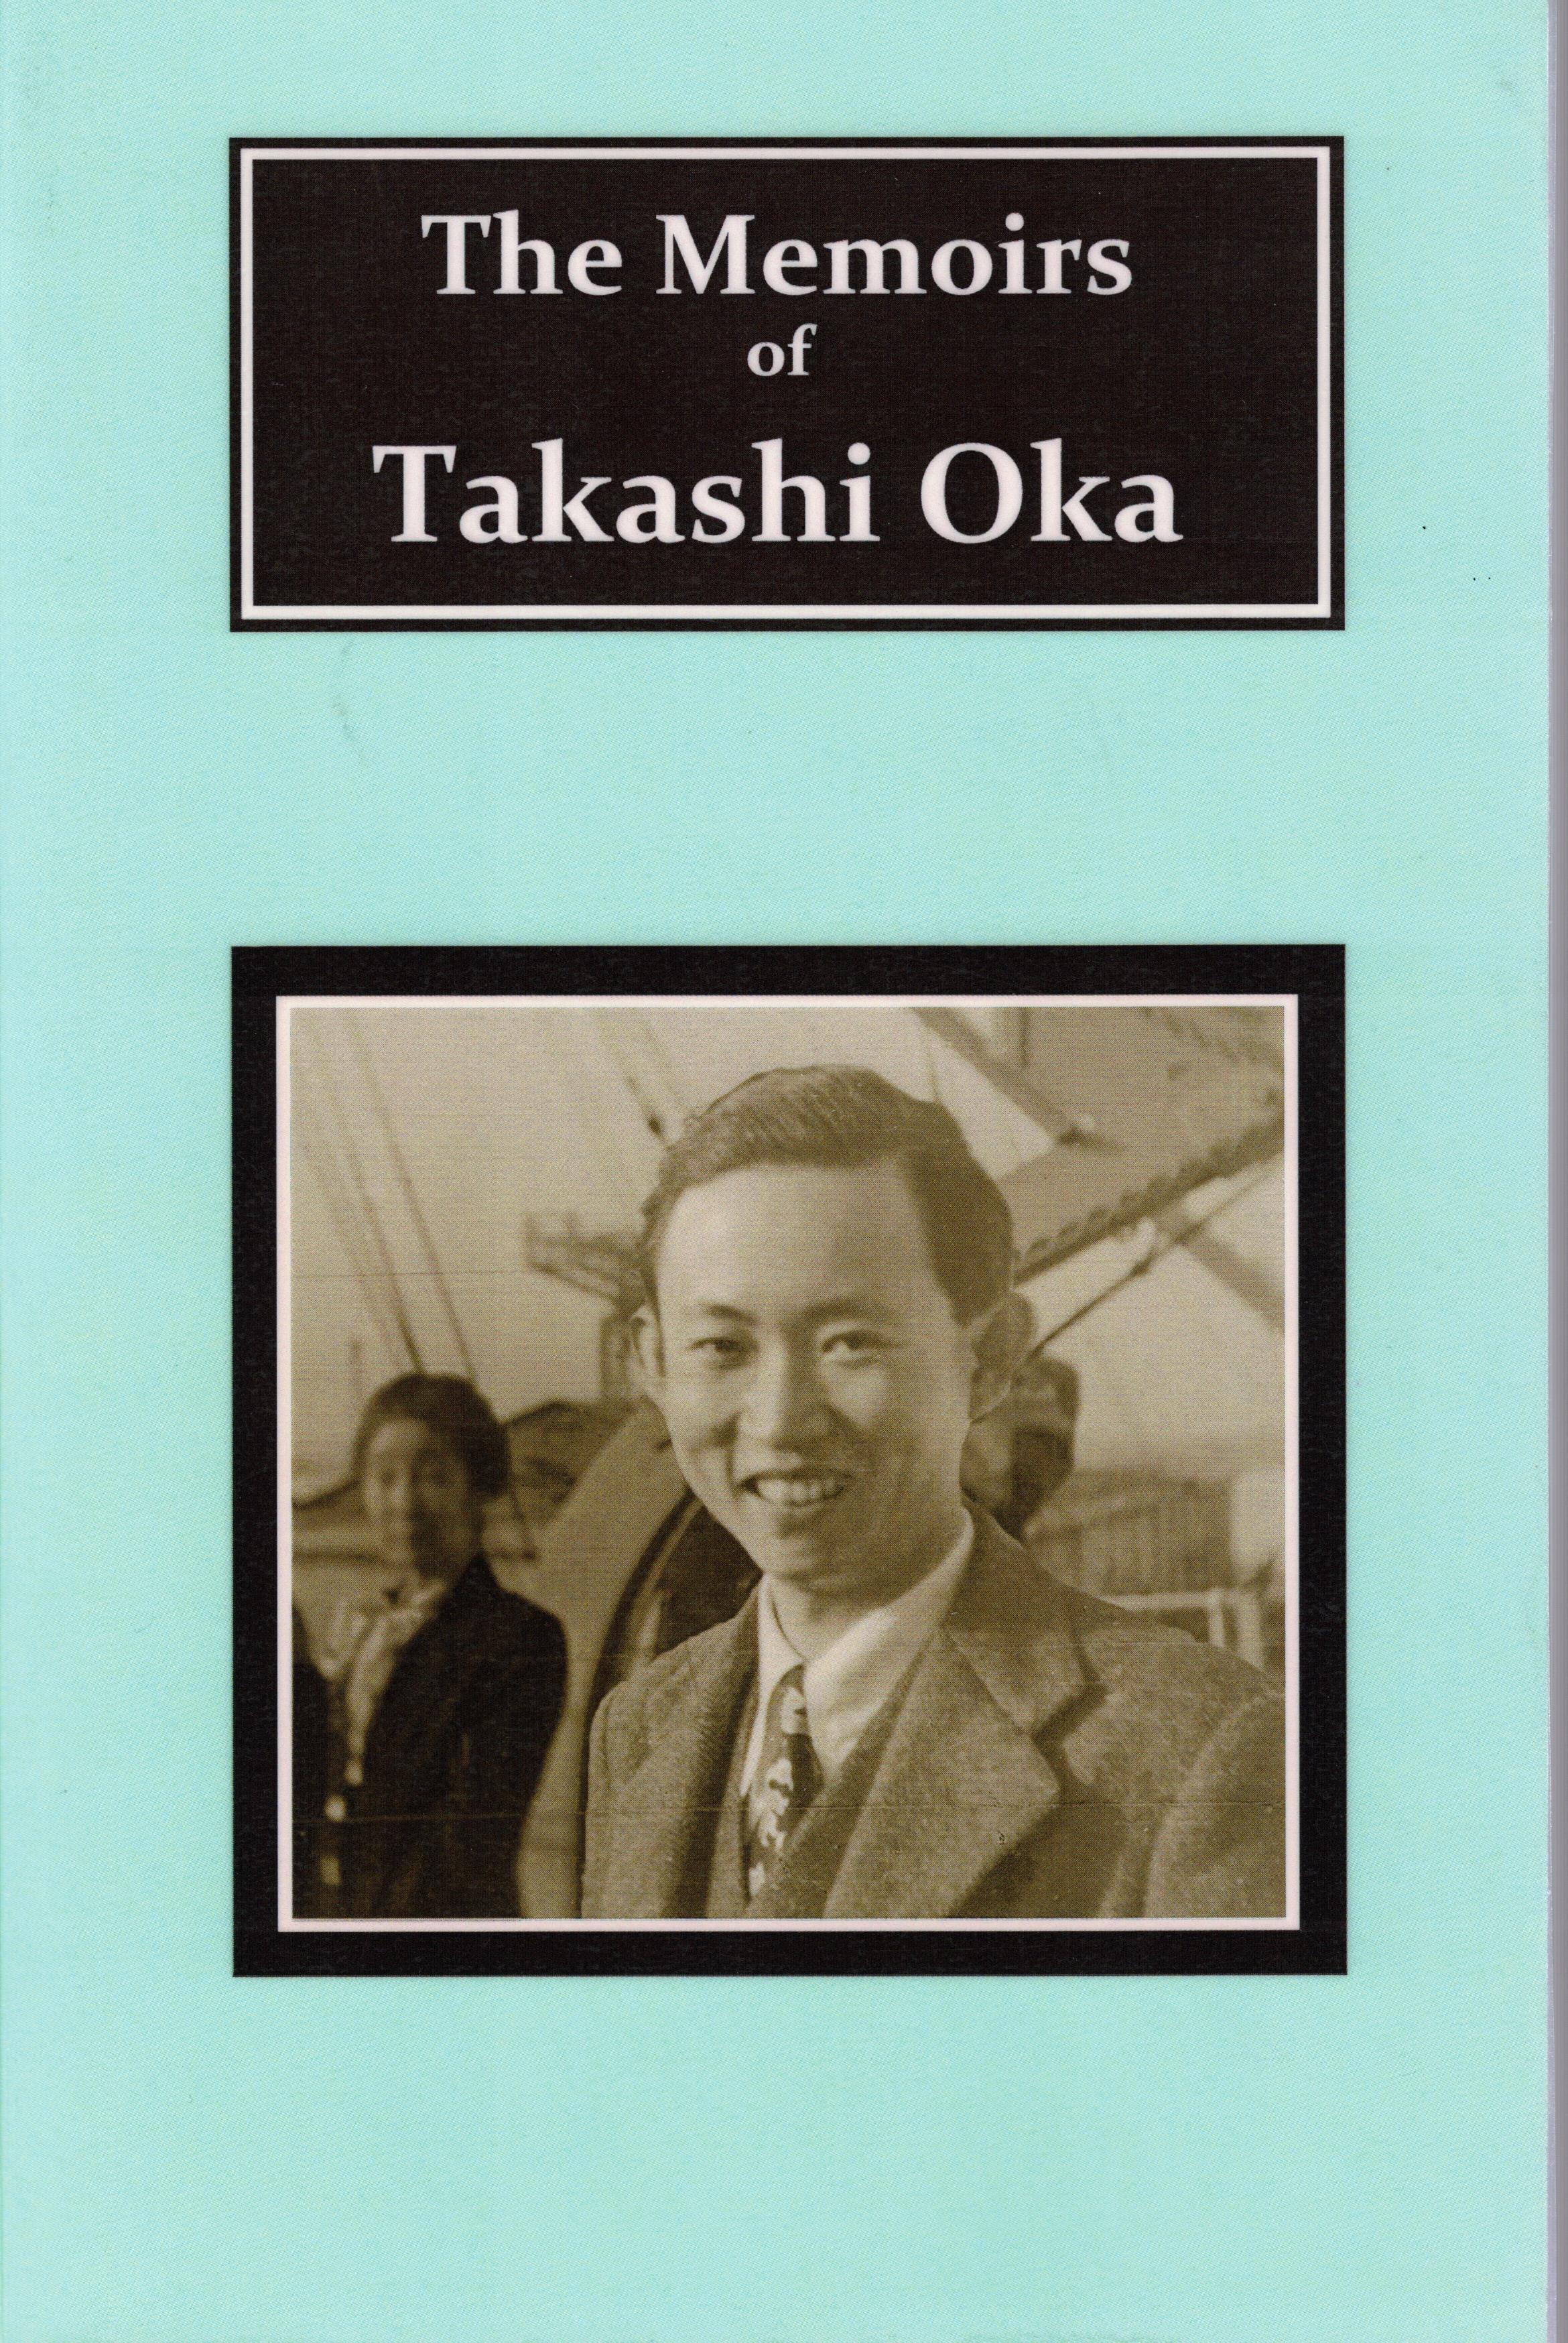 The Memoir of Takashi Oka